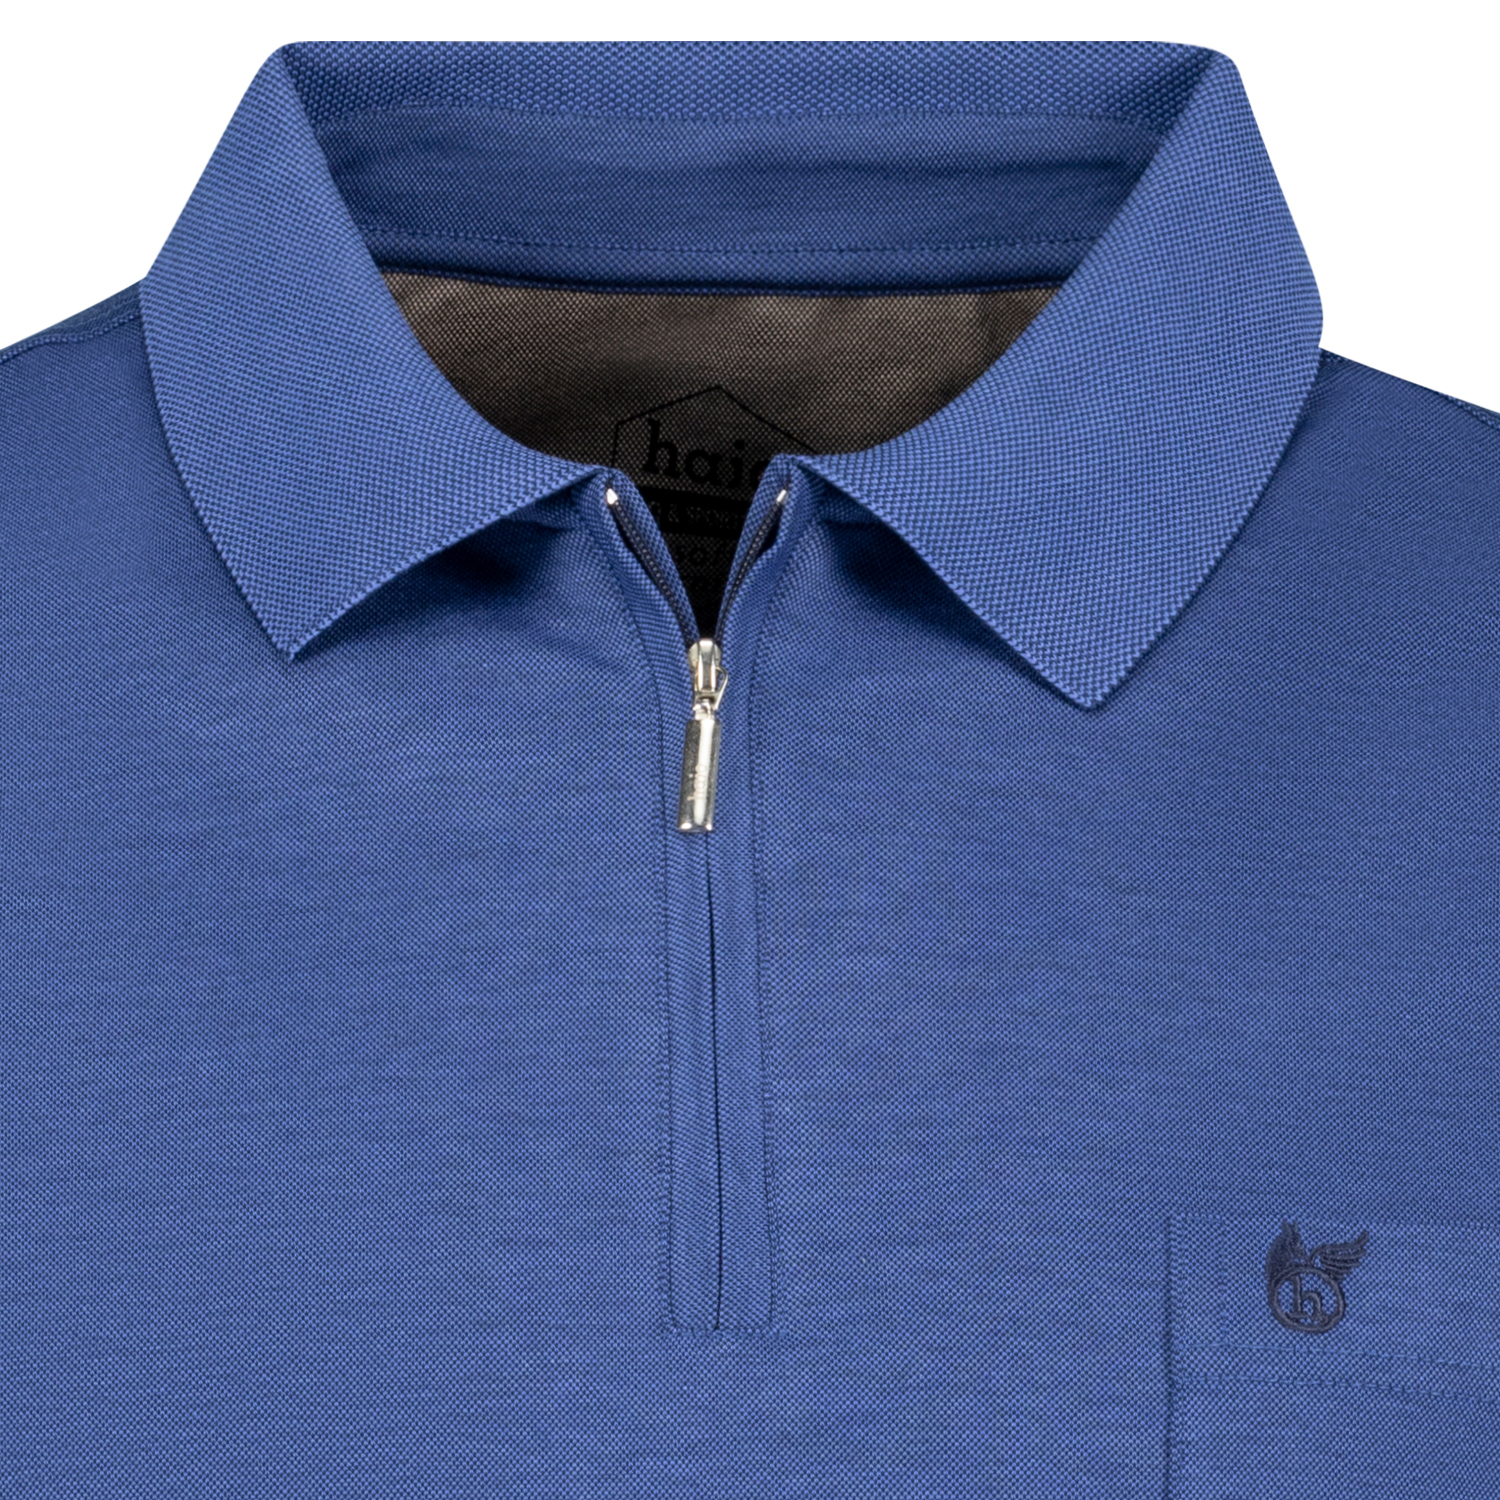 SOFTKNIT Kurzarm Poloshirt von hajo blau meliert bis Übergröße 6XL